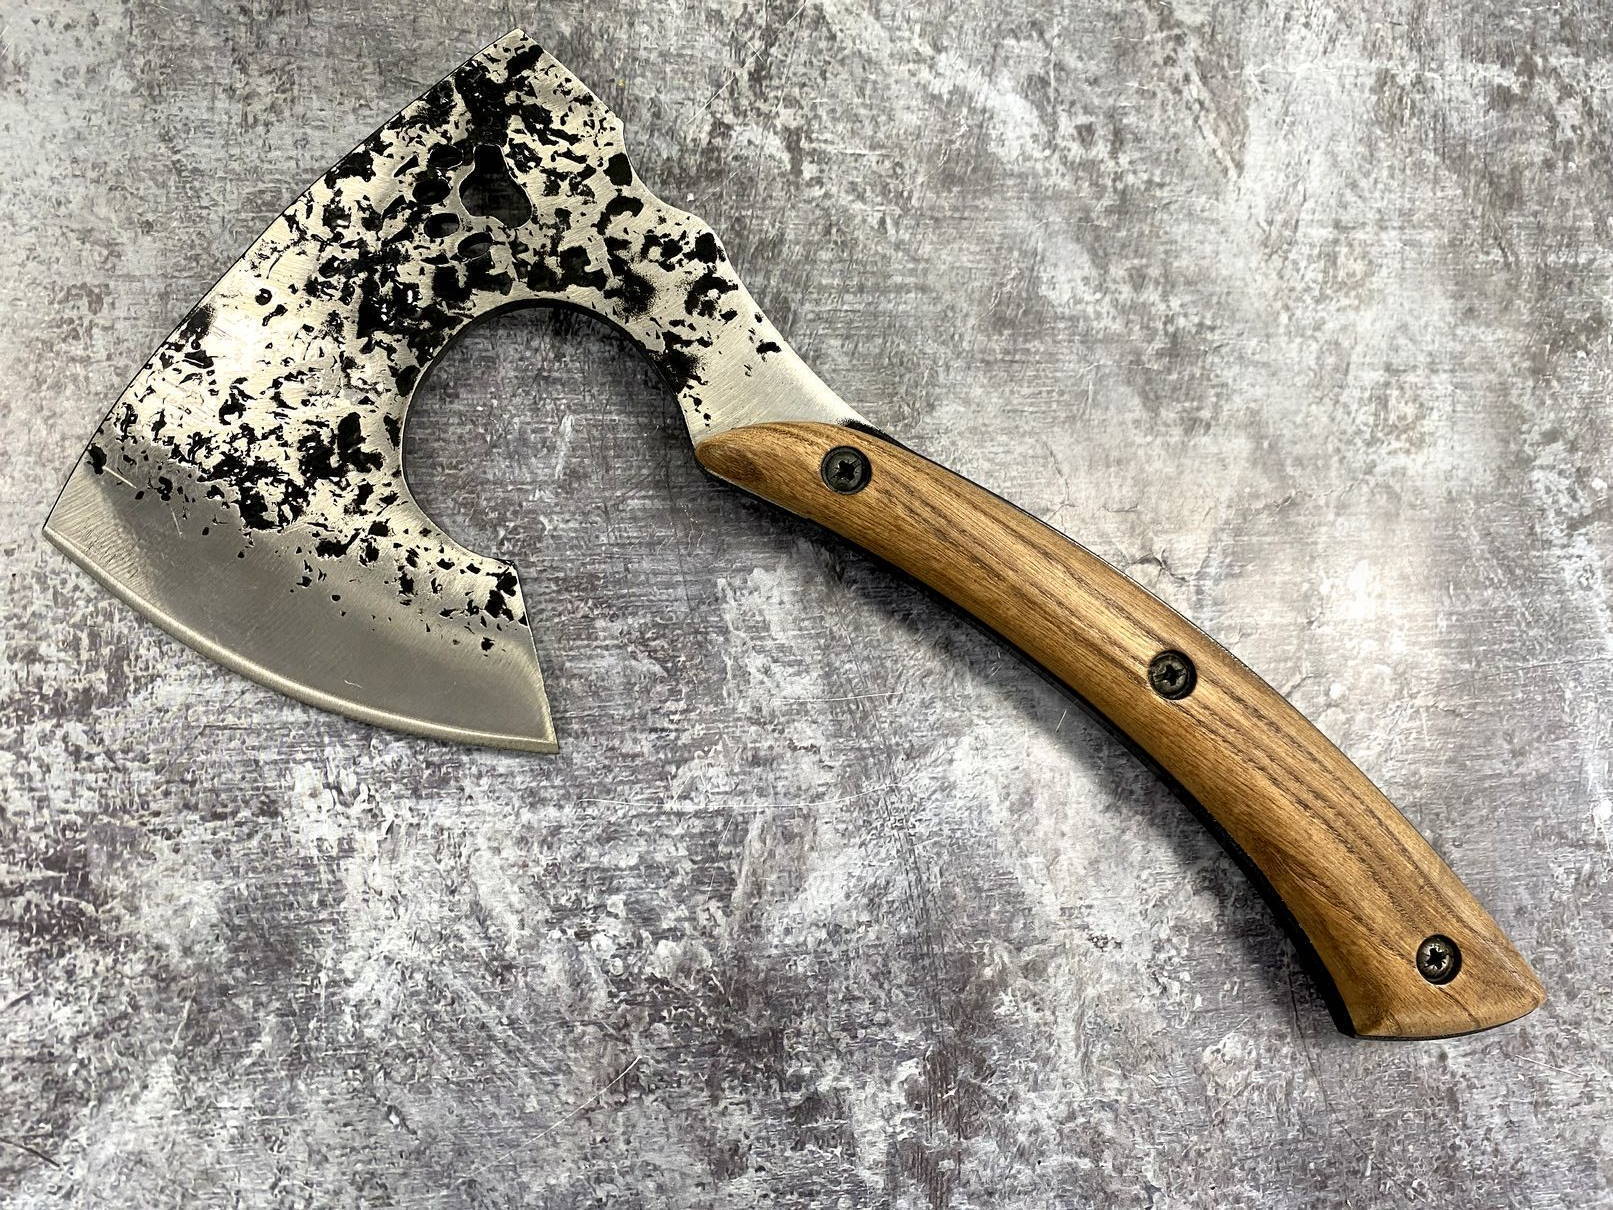 Kizlyar Supreme | Метательный нож Лидер